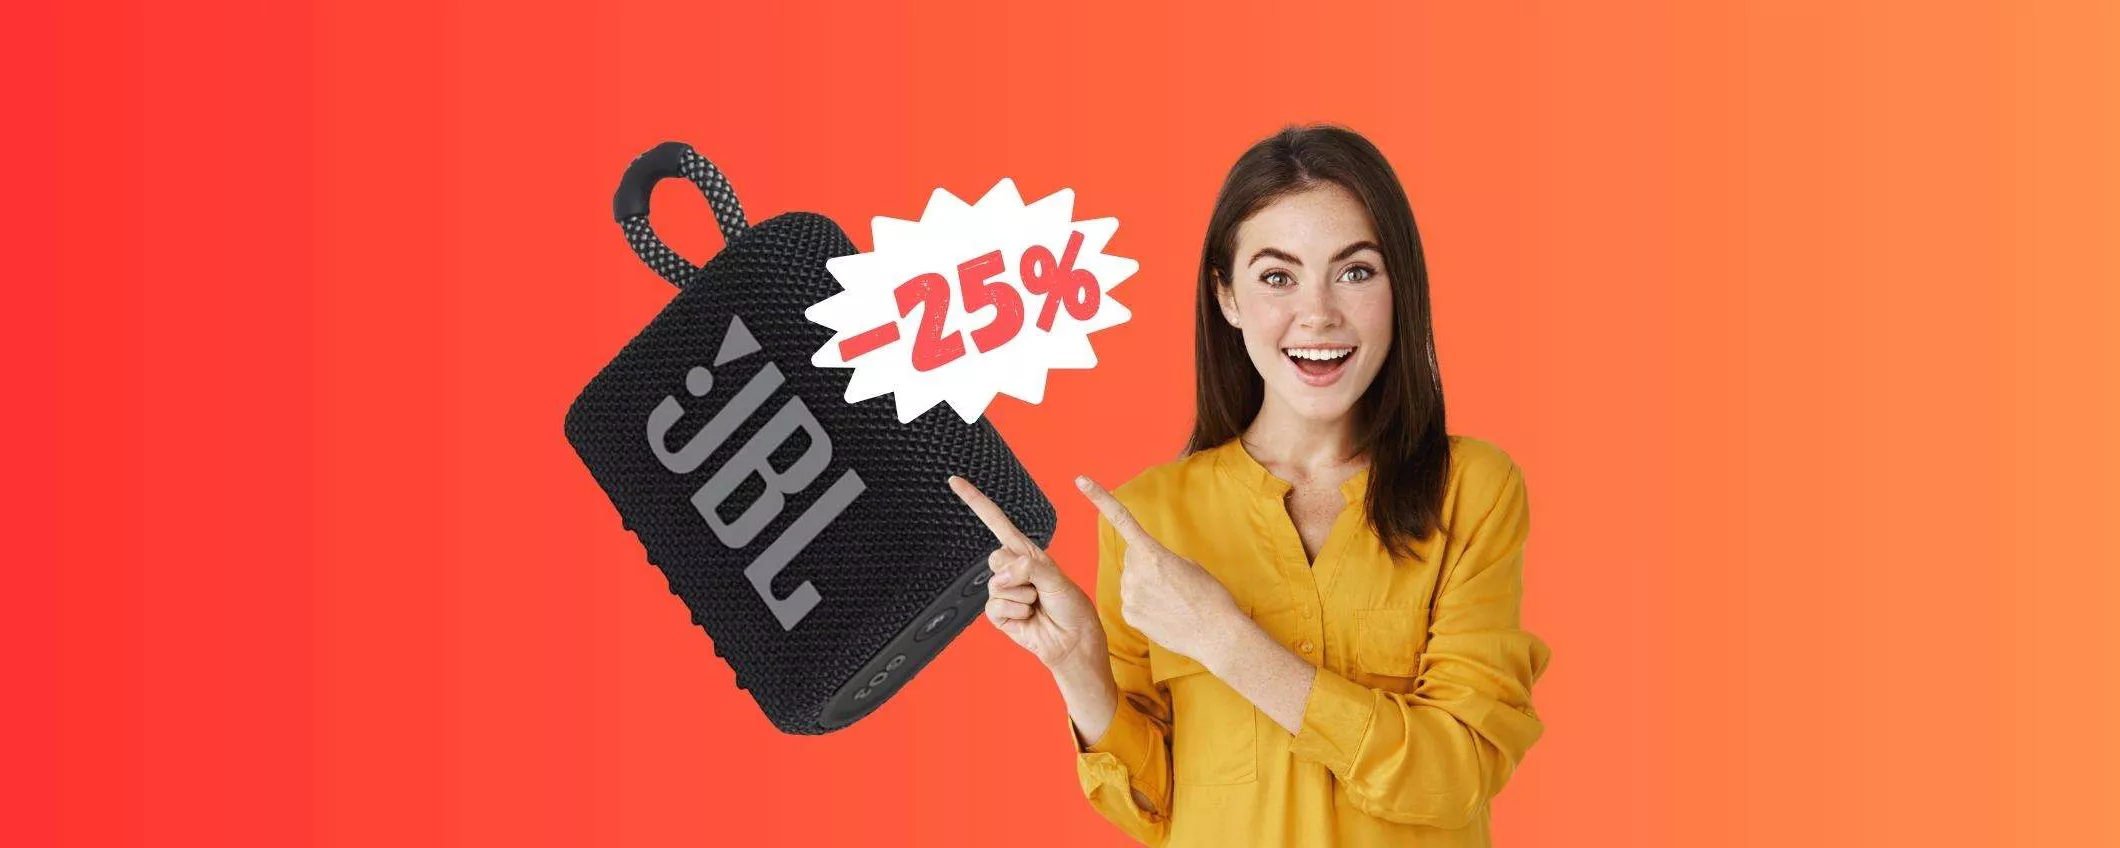 JBL Go 3, super offerta su Amazon: il prezzo crolla a 33,89€